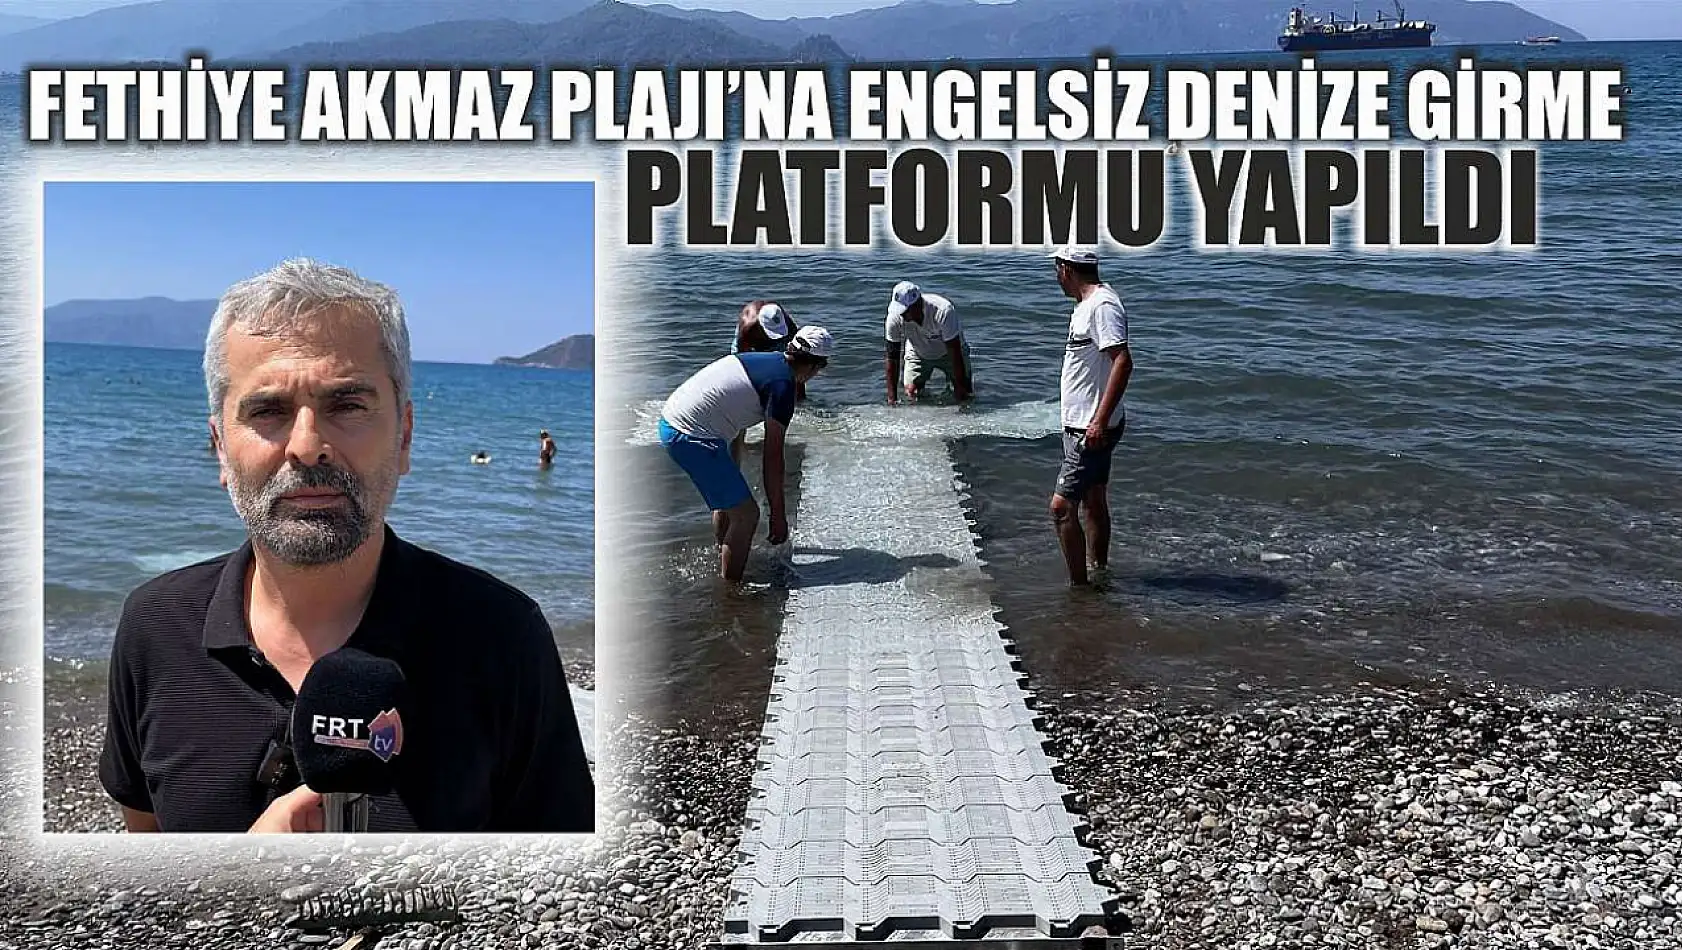 Fethiye Akmaz Plajı'na Engelsiz Denize Girme Platformu yapıldı